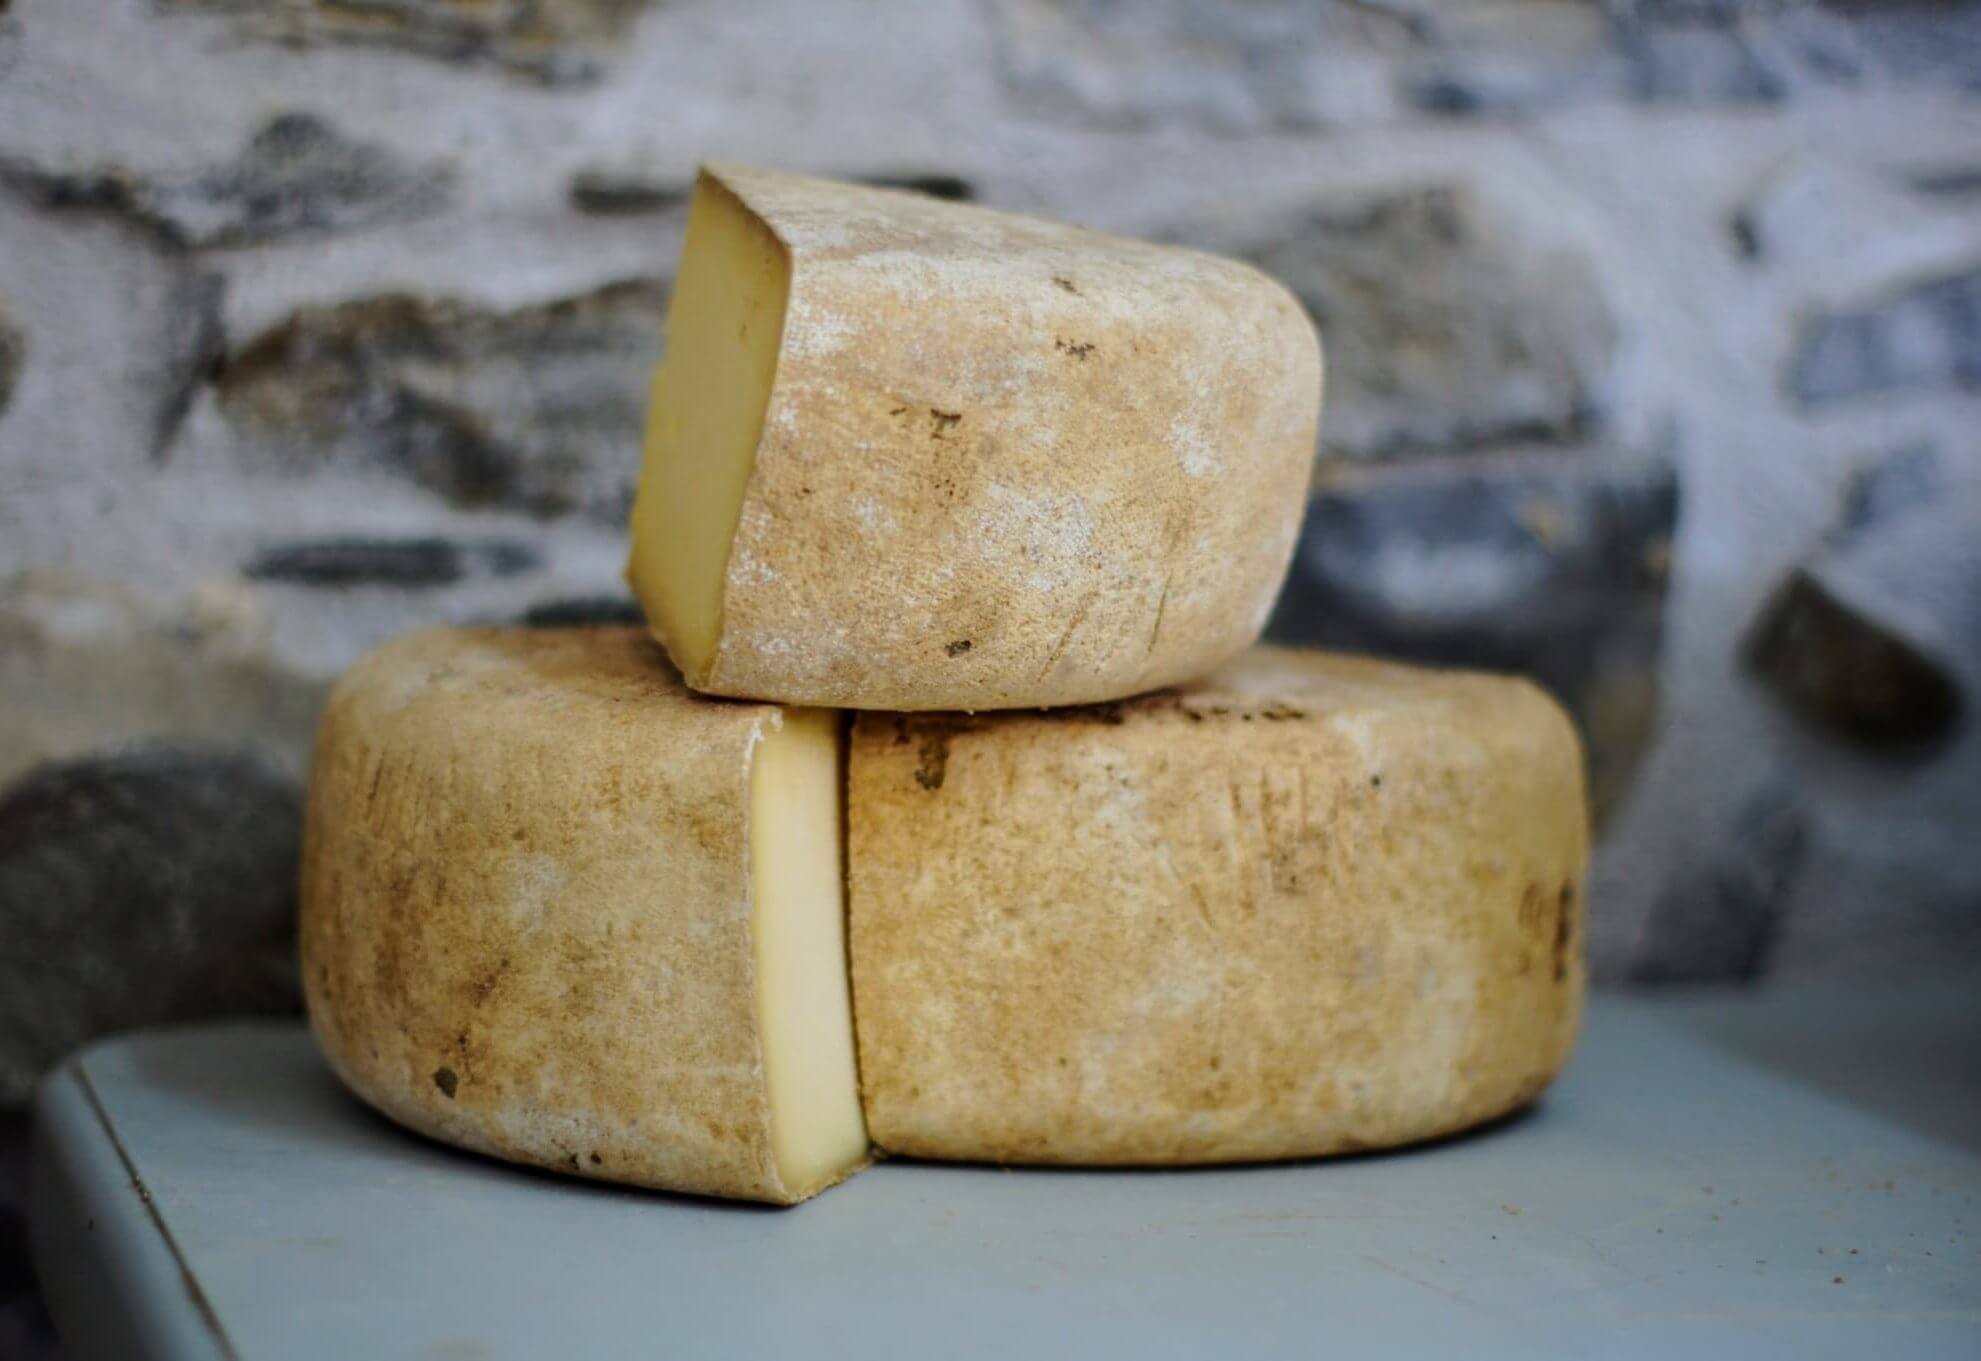 L’oro bianco del Piemonte: il formaggio!